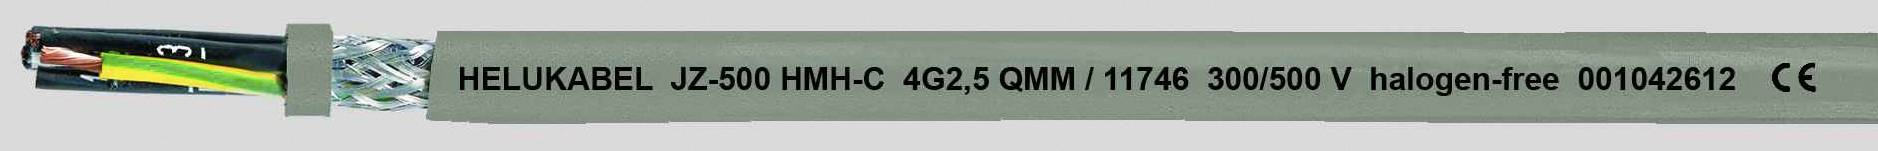 HELUKABEL JZ-500 HMH-C Steuerleitung 3 G 1.50 mm² Grau 11723-1000 1000 m